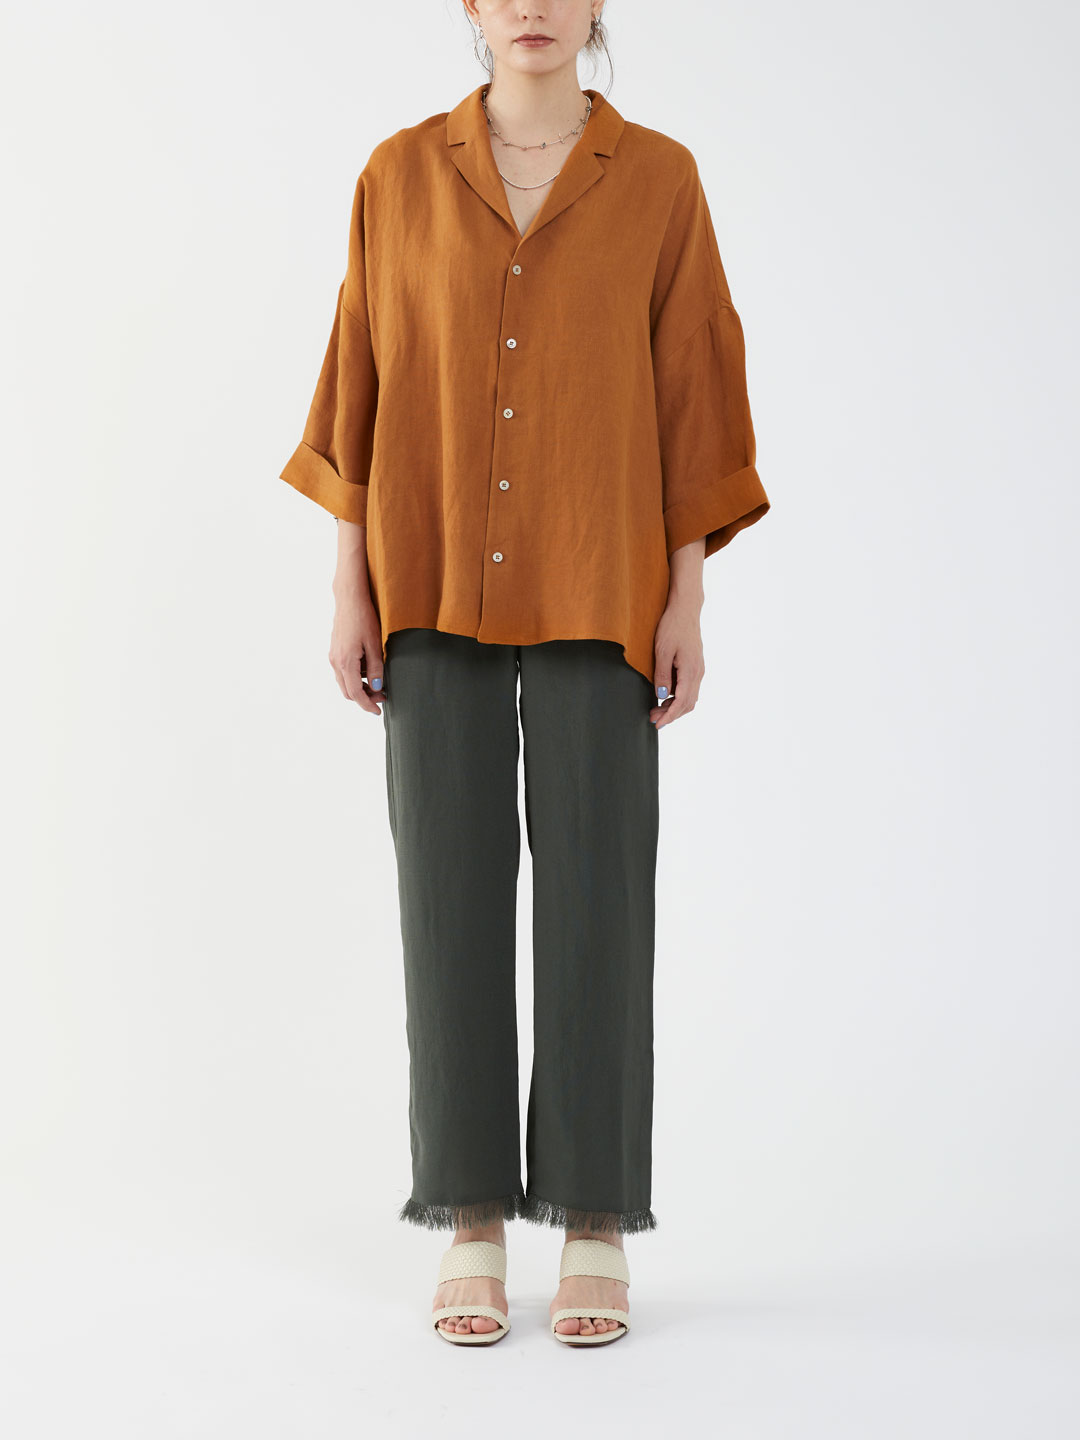 KIMONO Shirt - Brown